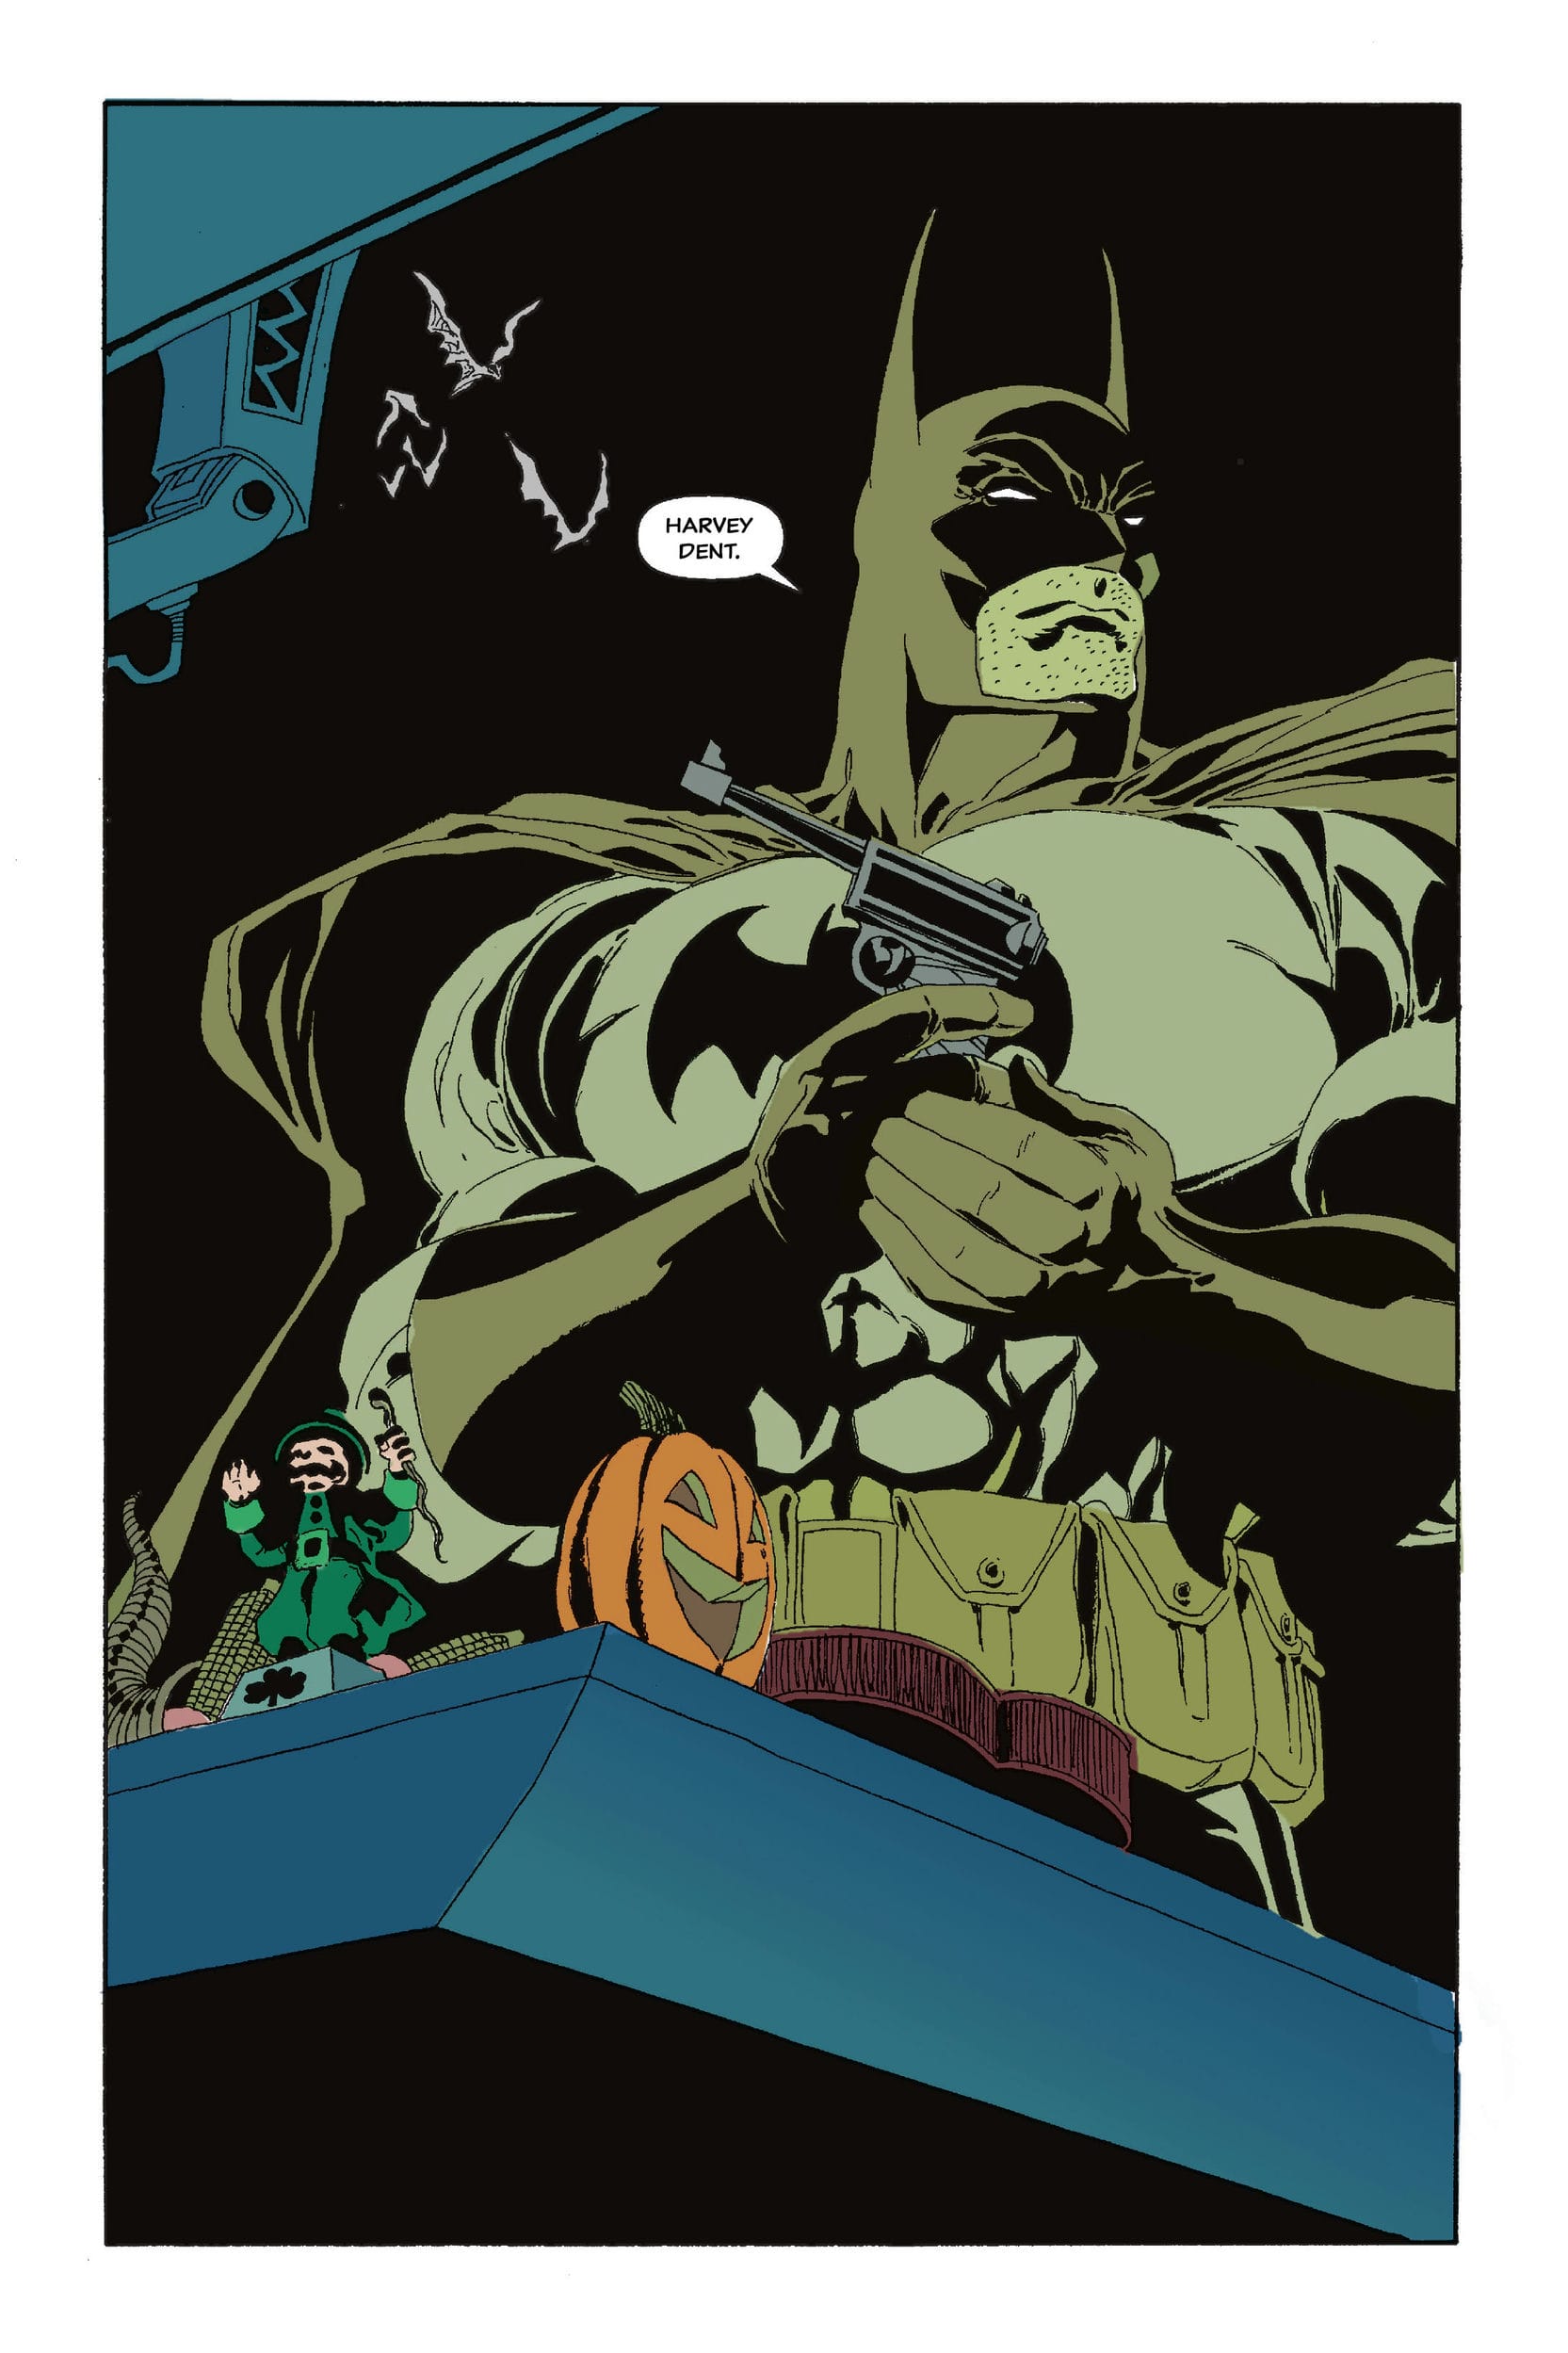 https://langgeek.net/wp-content/webpc-passthru.php?src=https://langgeek.net/wp-content/uploads/2022/10/Batman-The-Long-Halloween-Deluxe-Edition-184.jpg&nocache=1